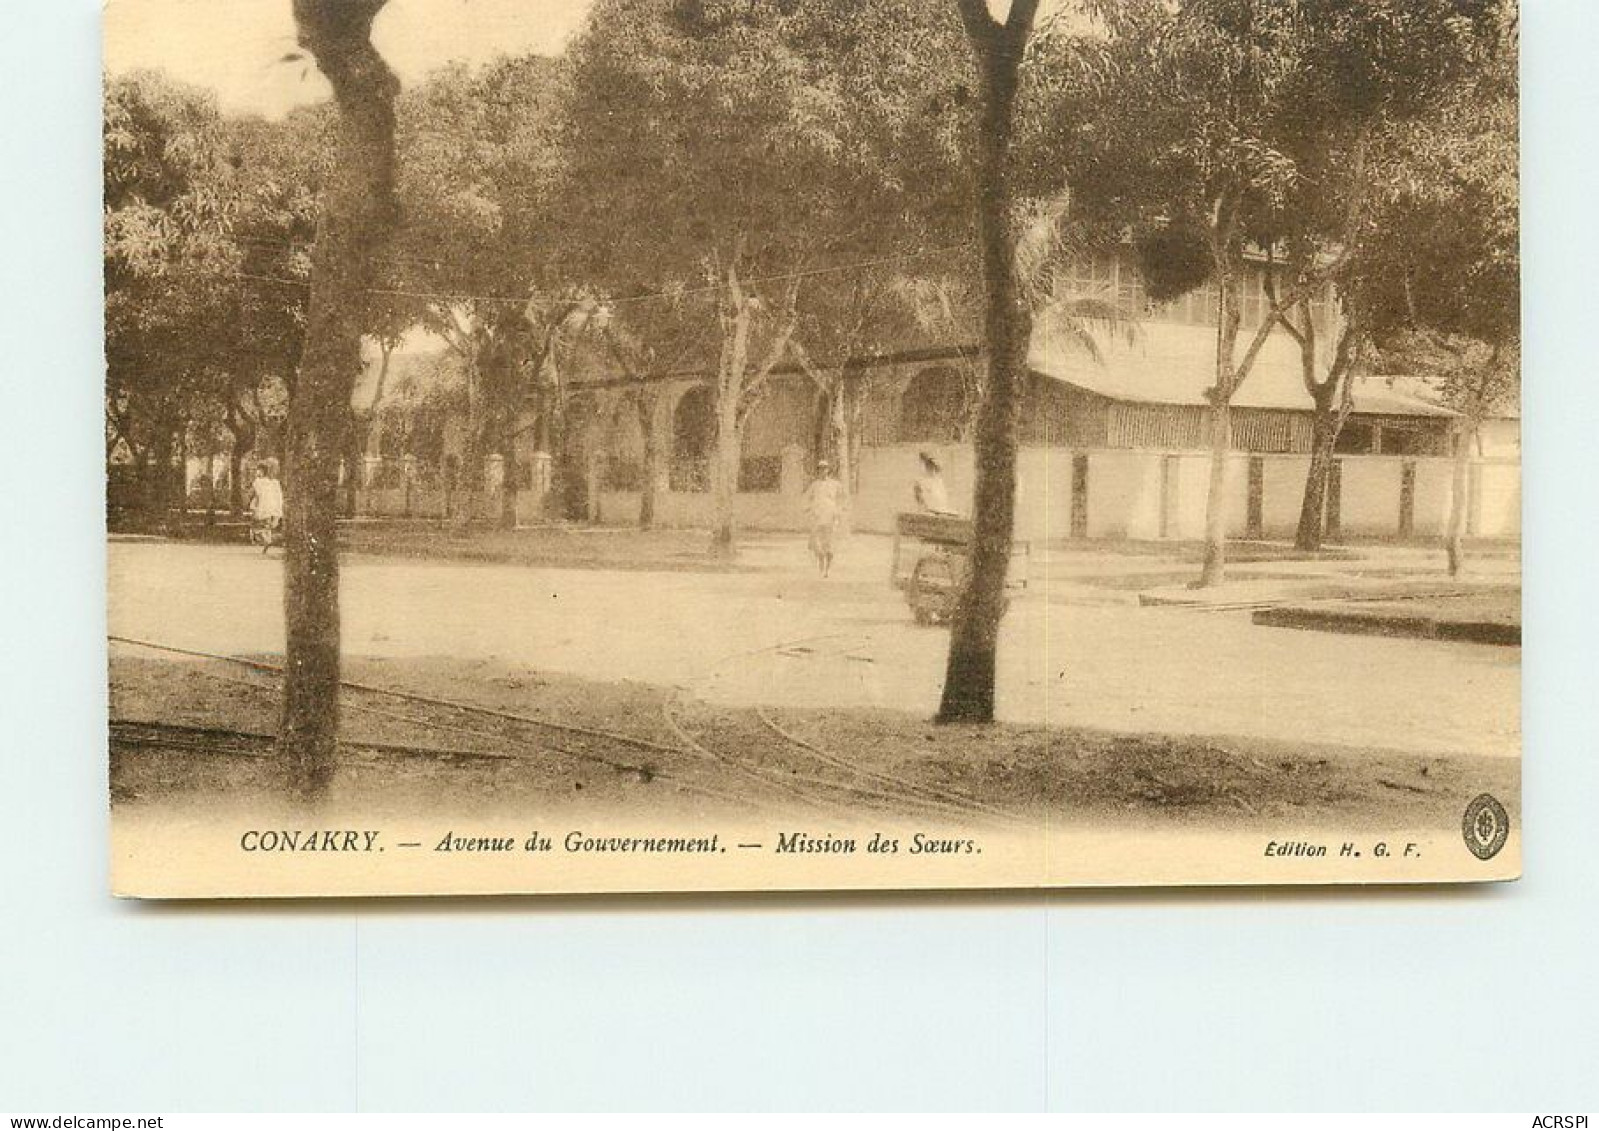 GUINEE   CONAKRY  Avenue Du Gouvernement Mission Des Soeurs TT 1430 - Französisch-Guinea